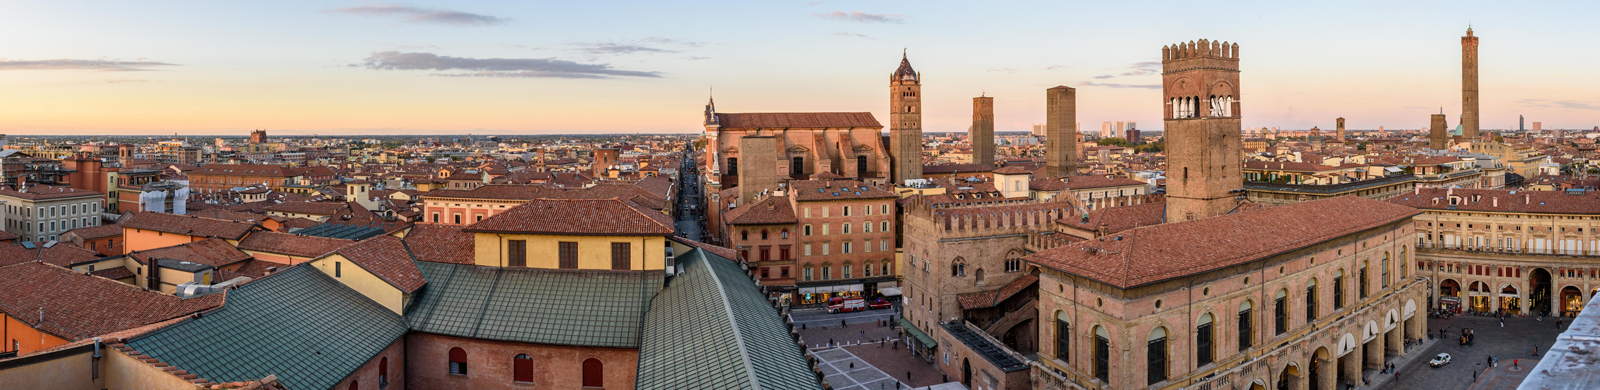 Panoramica della città di Bologna